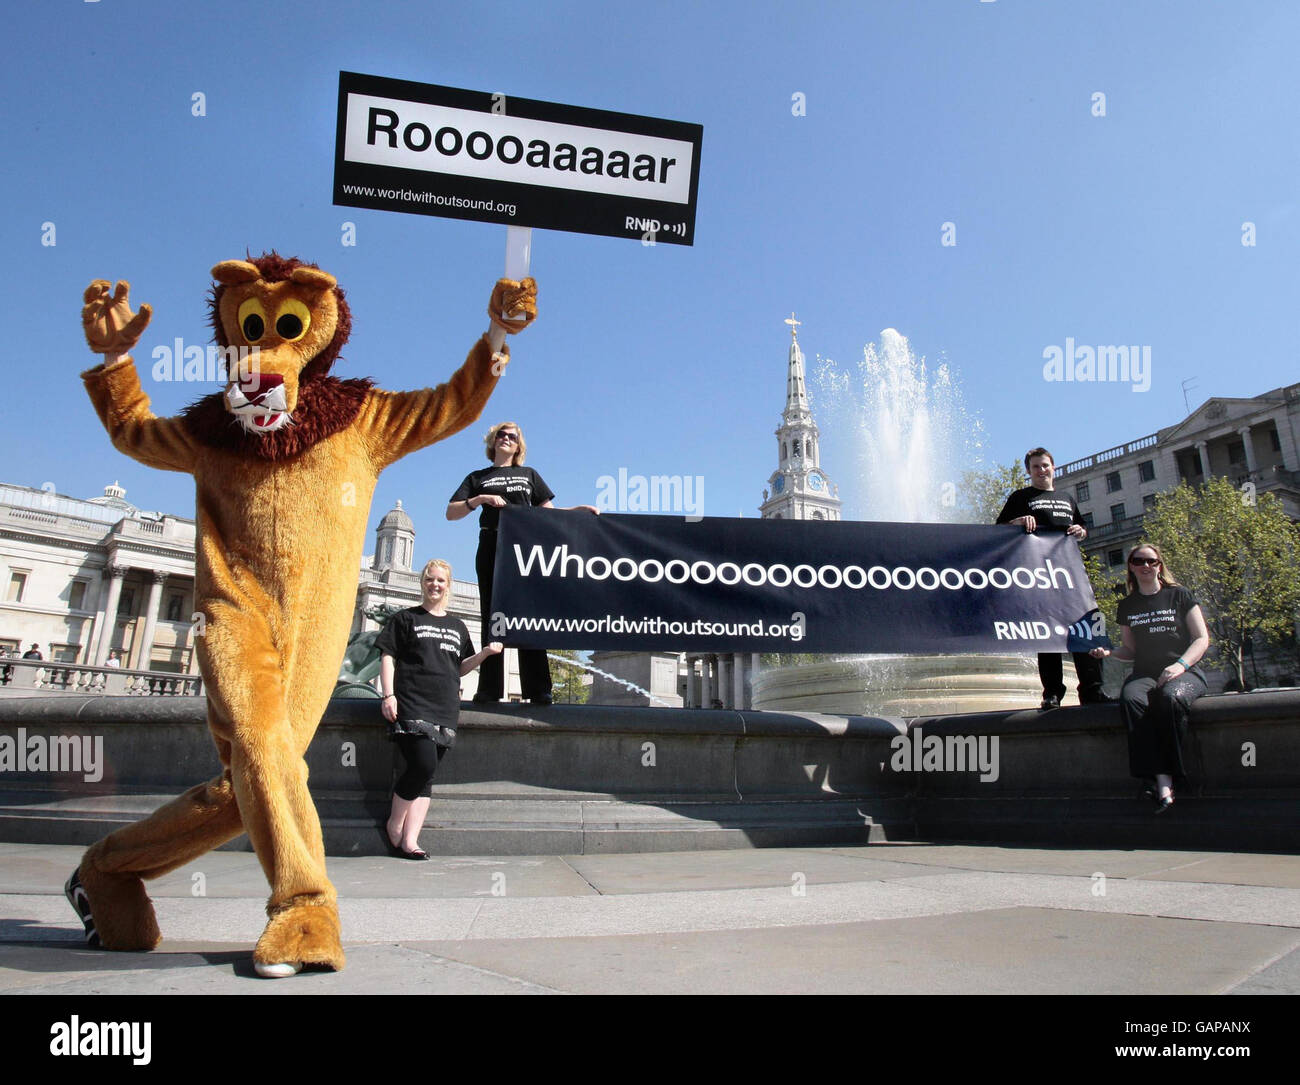 Ein als Löwe gekleideter Aktivist des Royal National Institute for the Deaf hält ein Plakat, auf dem das Brüllen eines Löwen untertitelt wird, während andere Aktivisten ein Transparent halten, das den „Whoosh“ des Brunnens untertitelt, um die „Deaf Awareness Week“ durch die Untertitelung der wichtigsten Wahrzeichen Trafalgar Square, London, hervorzuheben. Stockfoto